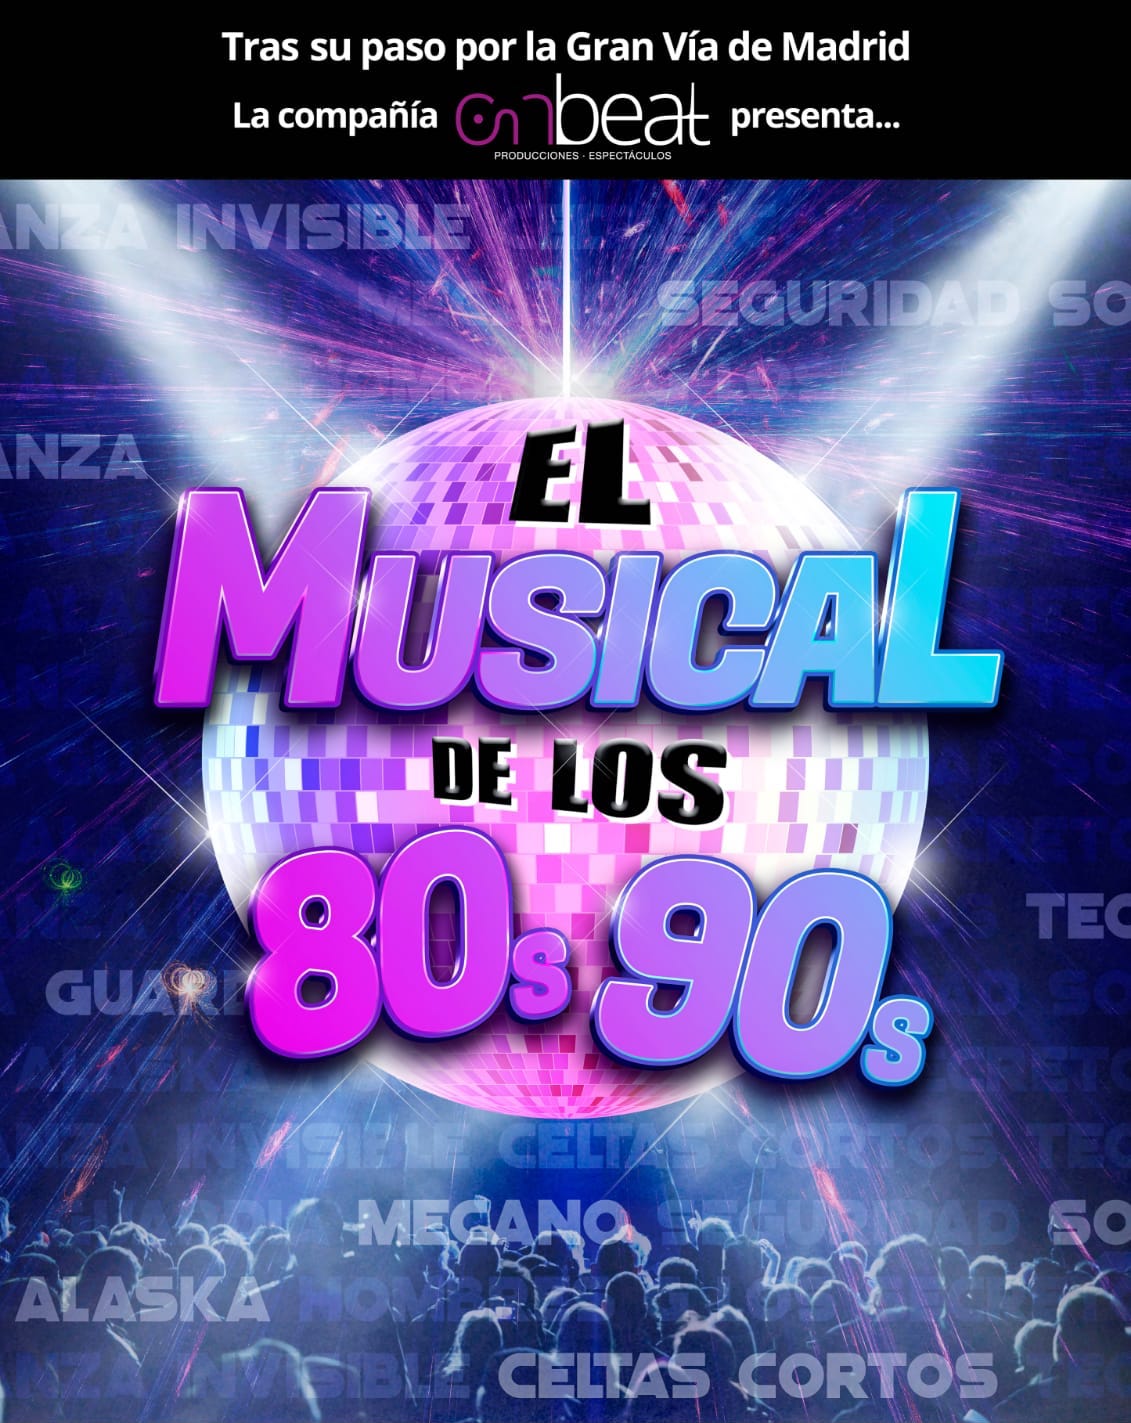 EL MUSICAL DE LOS 80’S 90’S